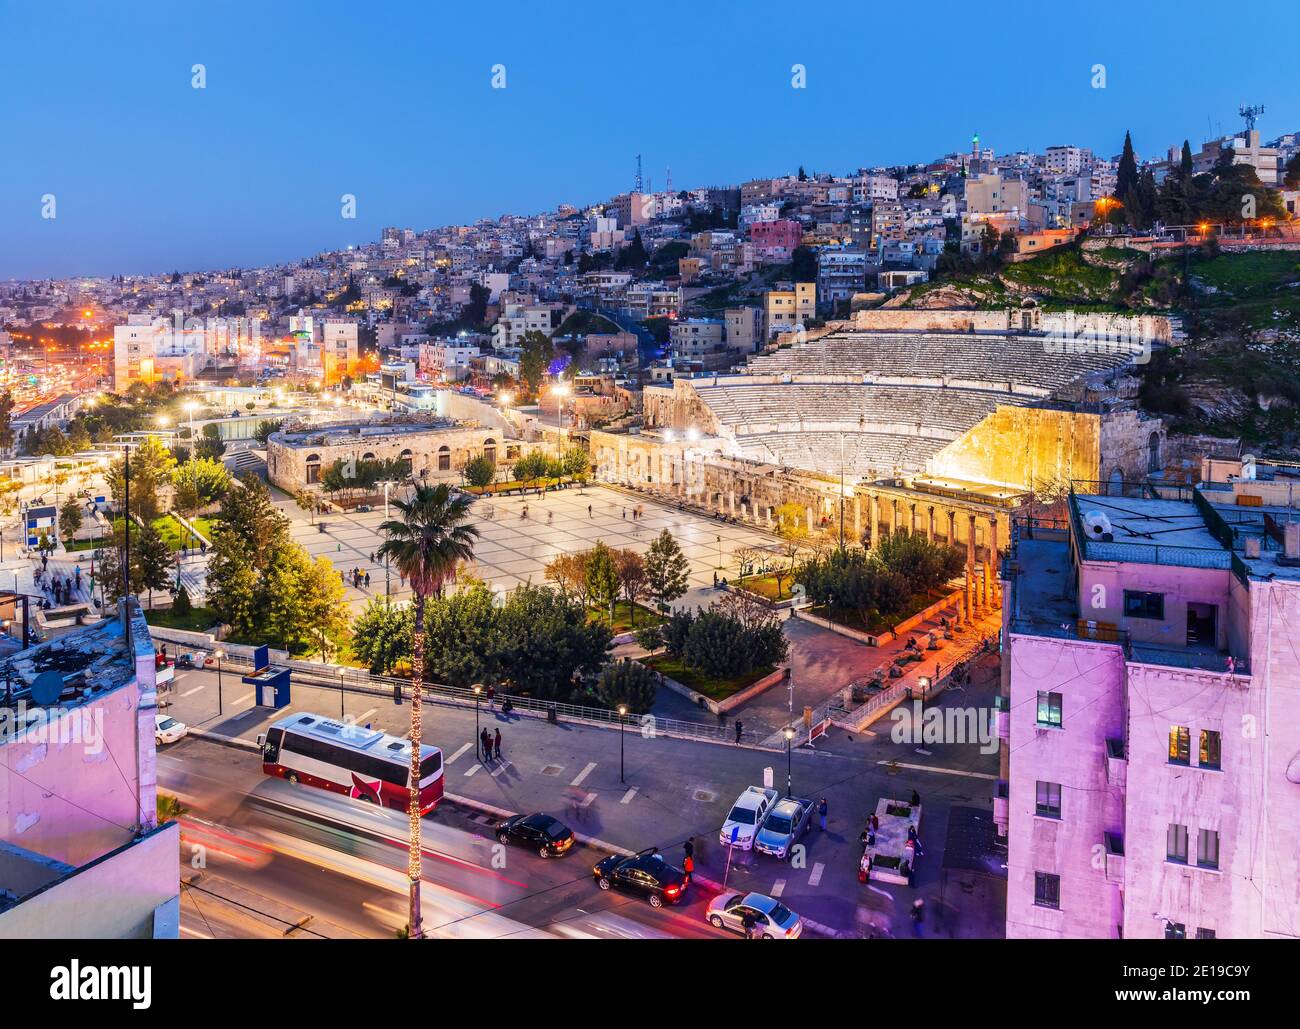 Amman, Jordanien. Blick auf das römische Theater und die Stadt am Abend. Stockfoto